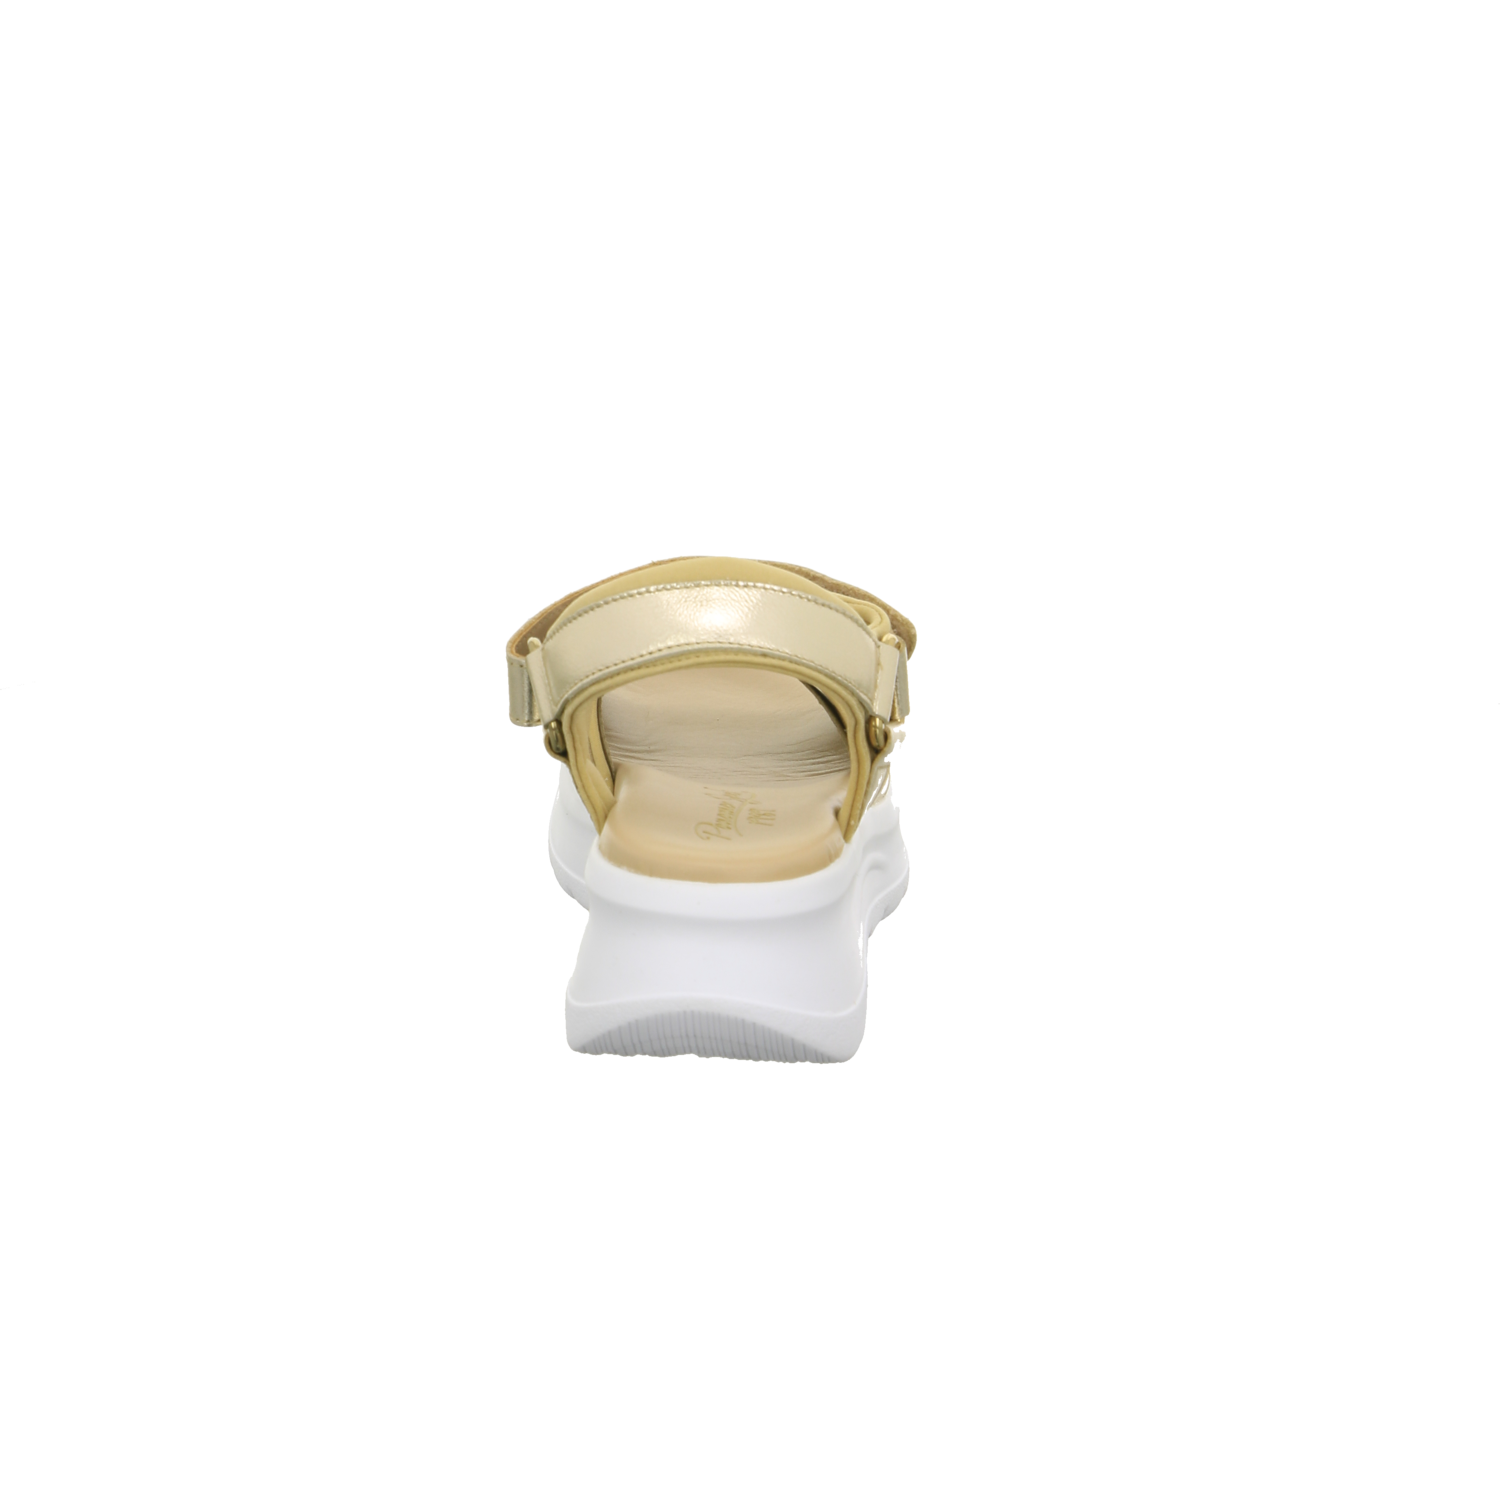 Panama Jack Sandalette bis 45 mm gold